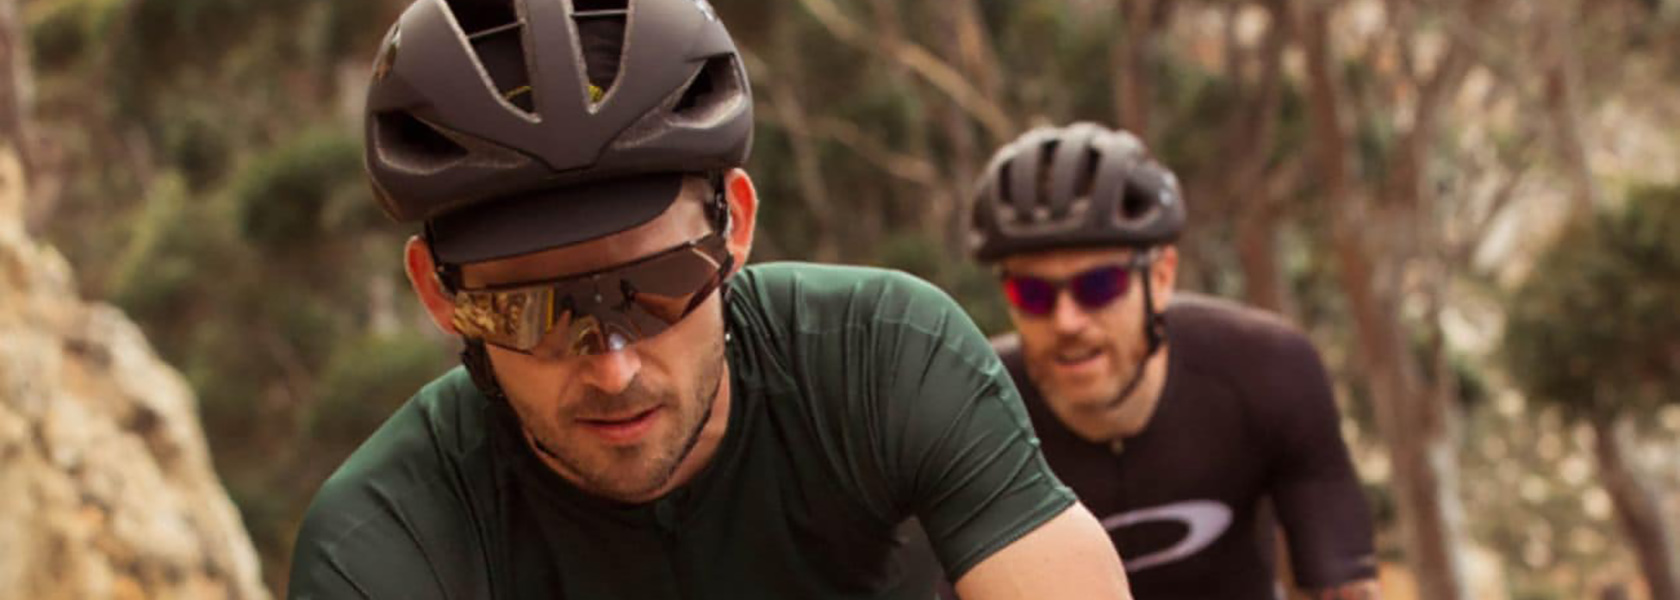 Oakley fietsbril: meer dan fashion alleen | Iron Bikes te Rumst